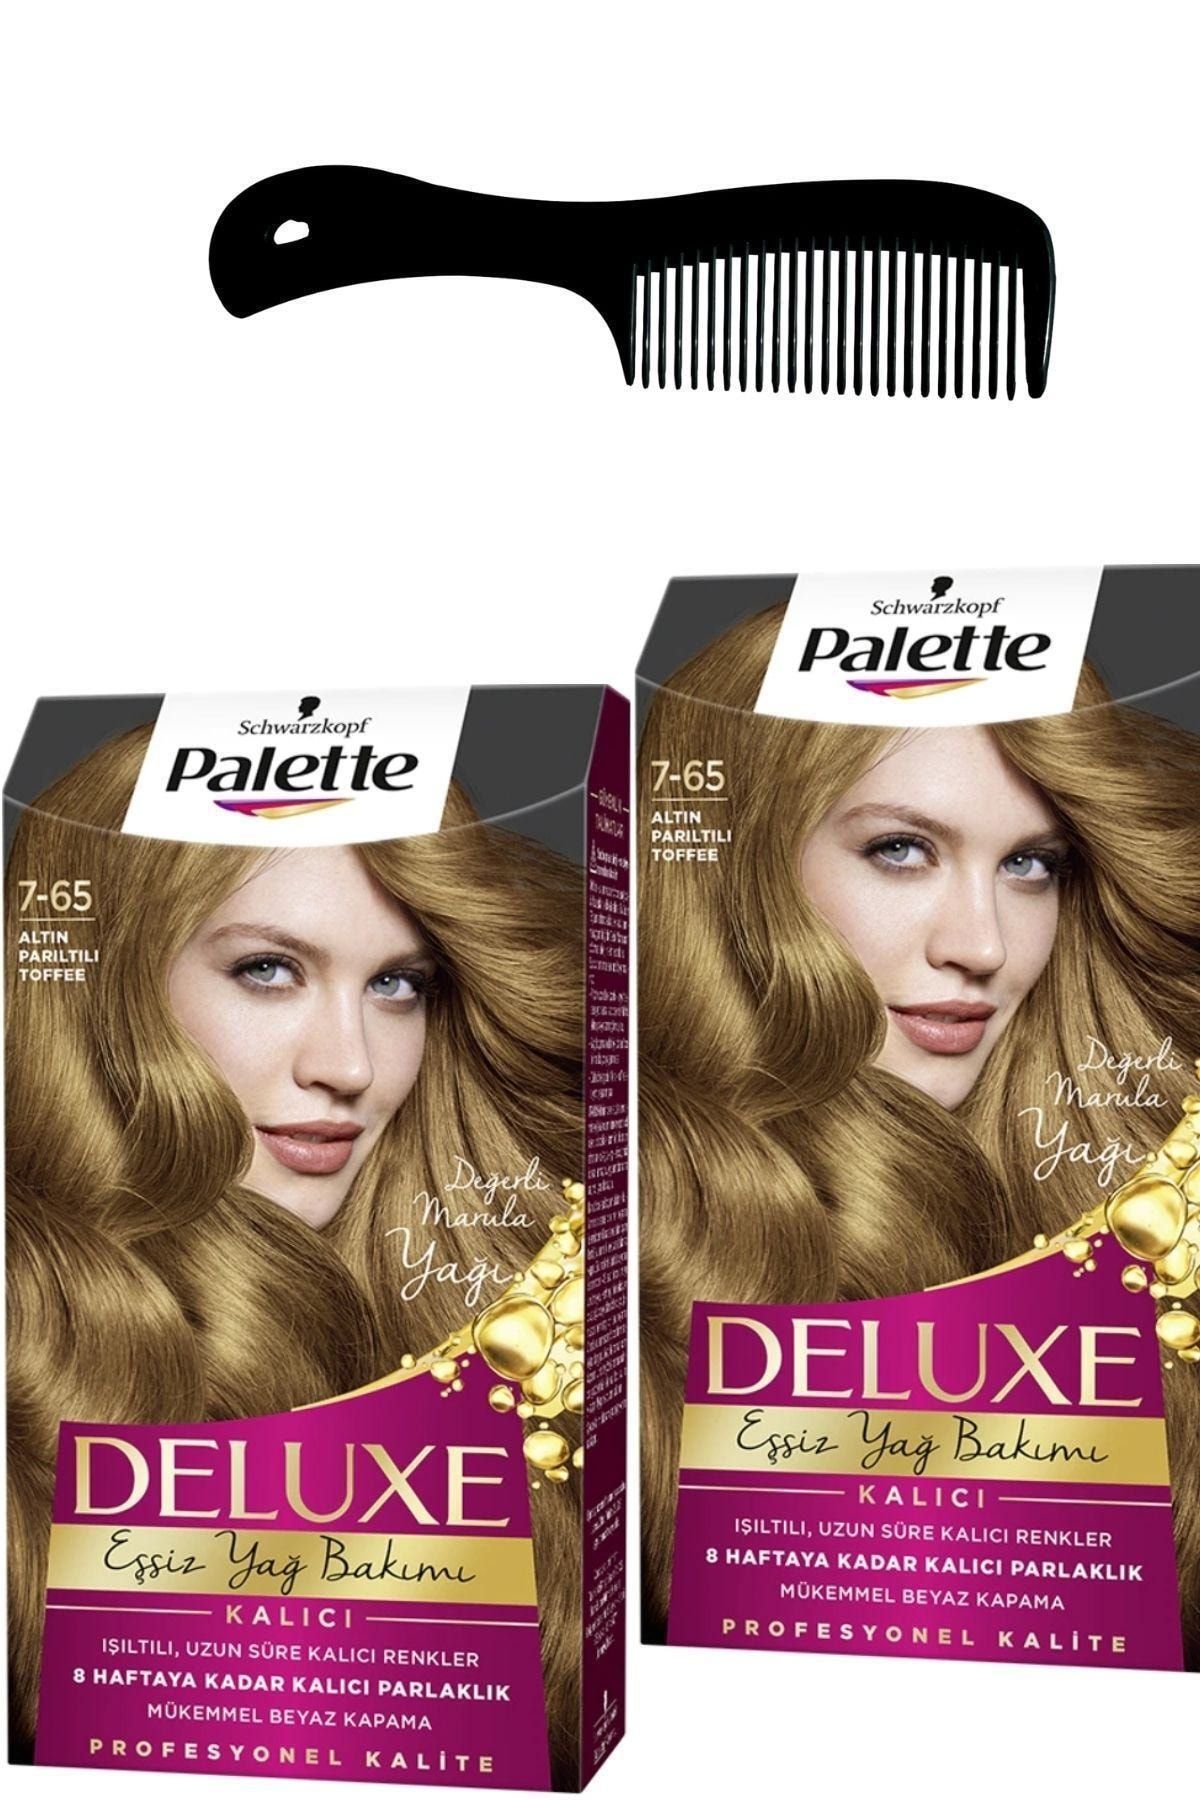 Palette Deluxe Saç Boyası 7-65 Altın Parıltılı Toffee X 2 Adet + Saç Açıcı Tarak